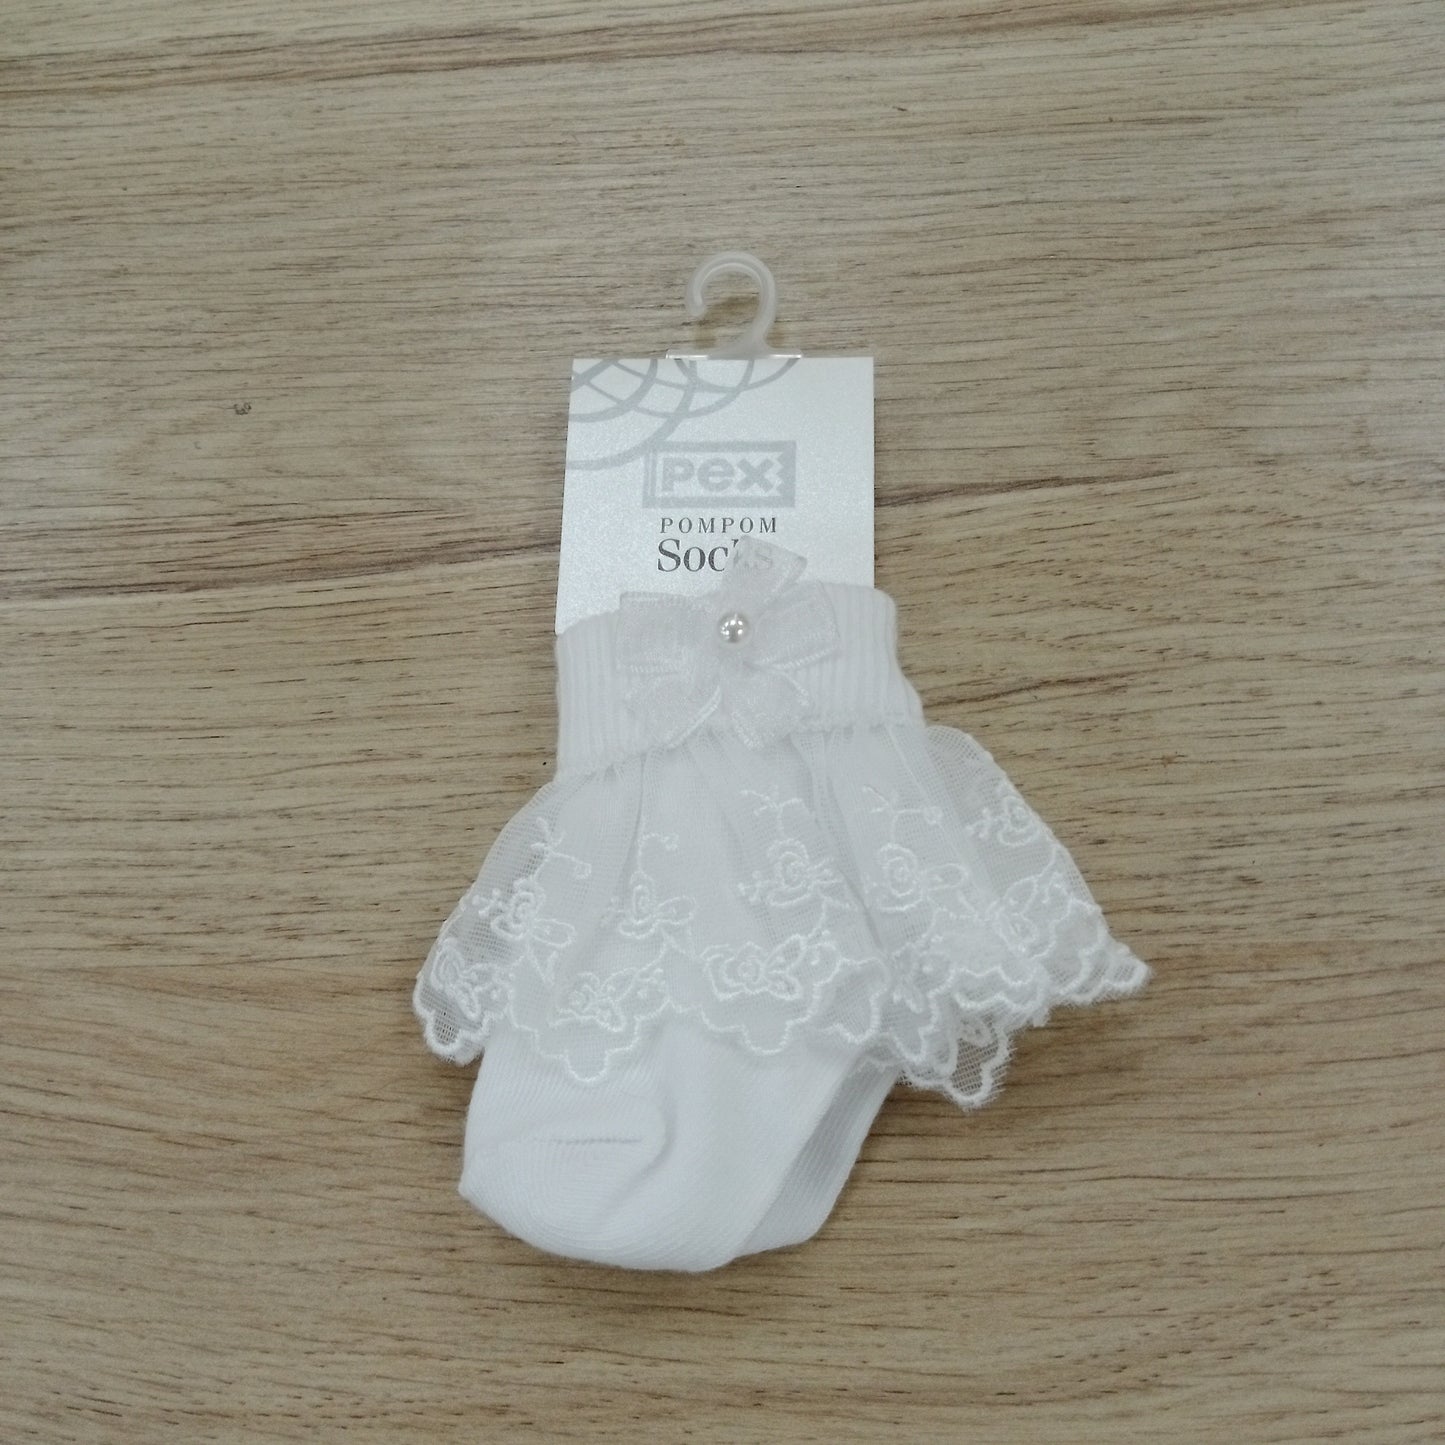 Pex white snowdrop lace sock